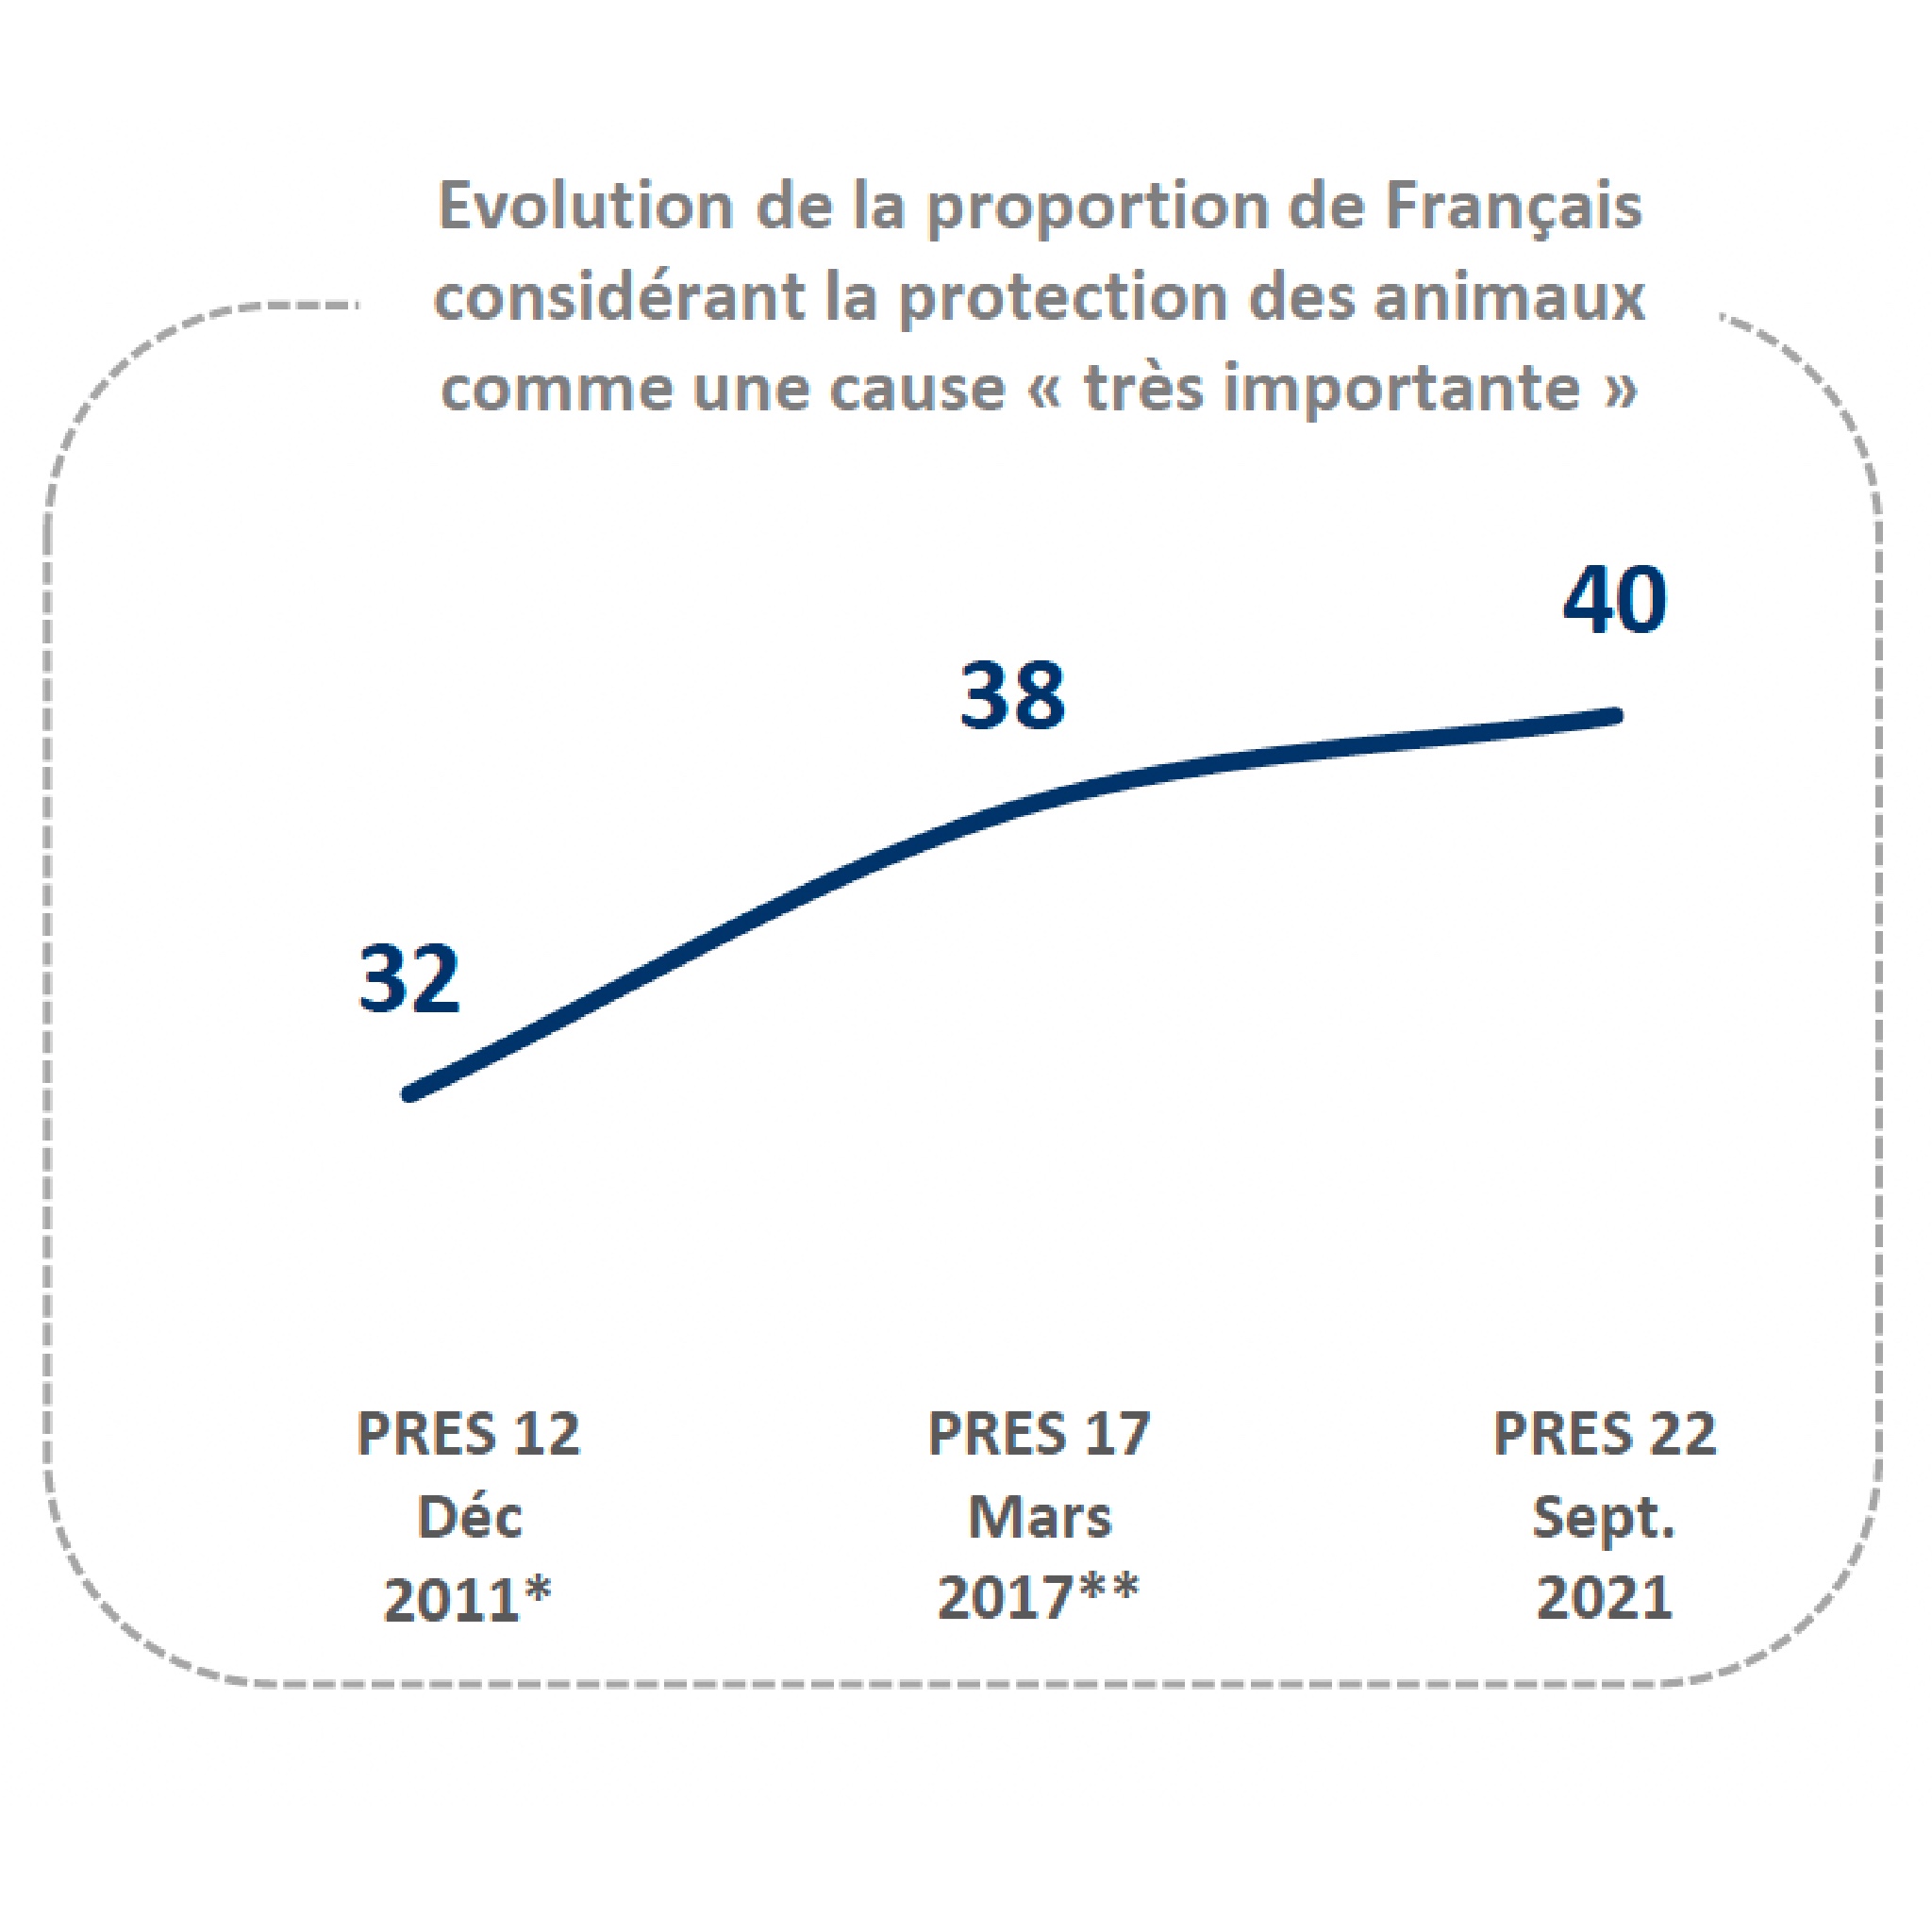 evolution de la proportion des français considérant la protection animale comme très importante